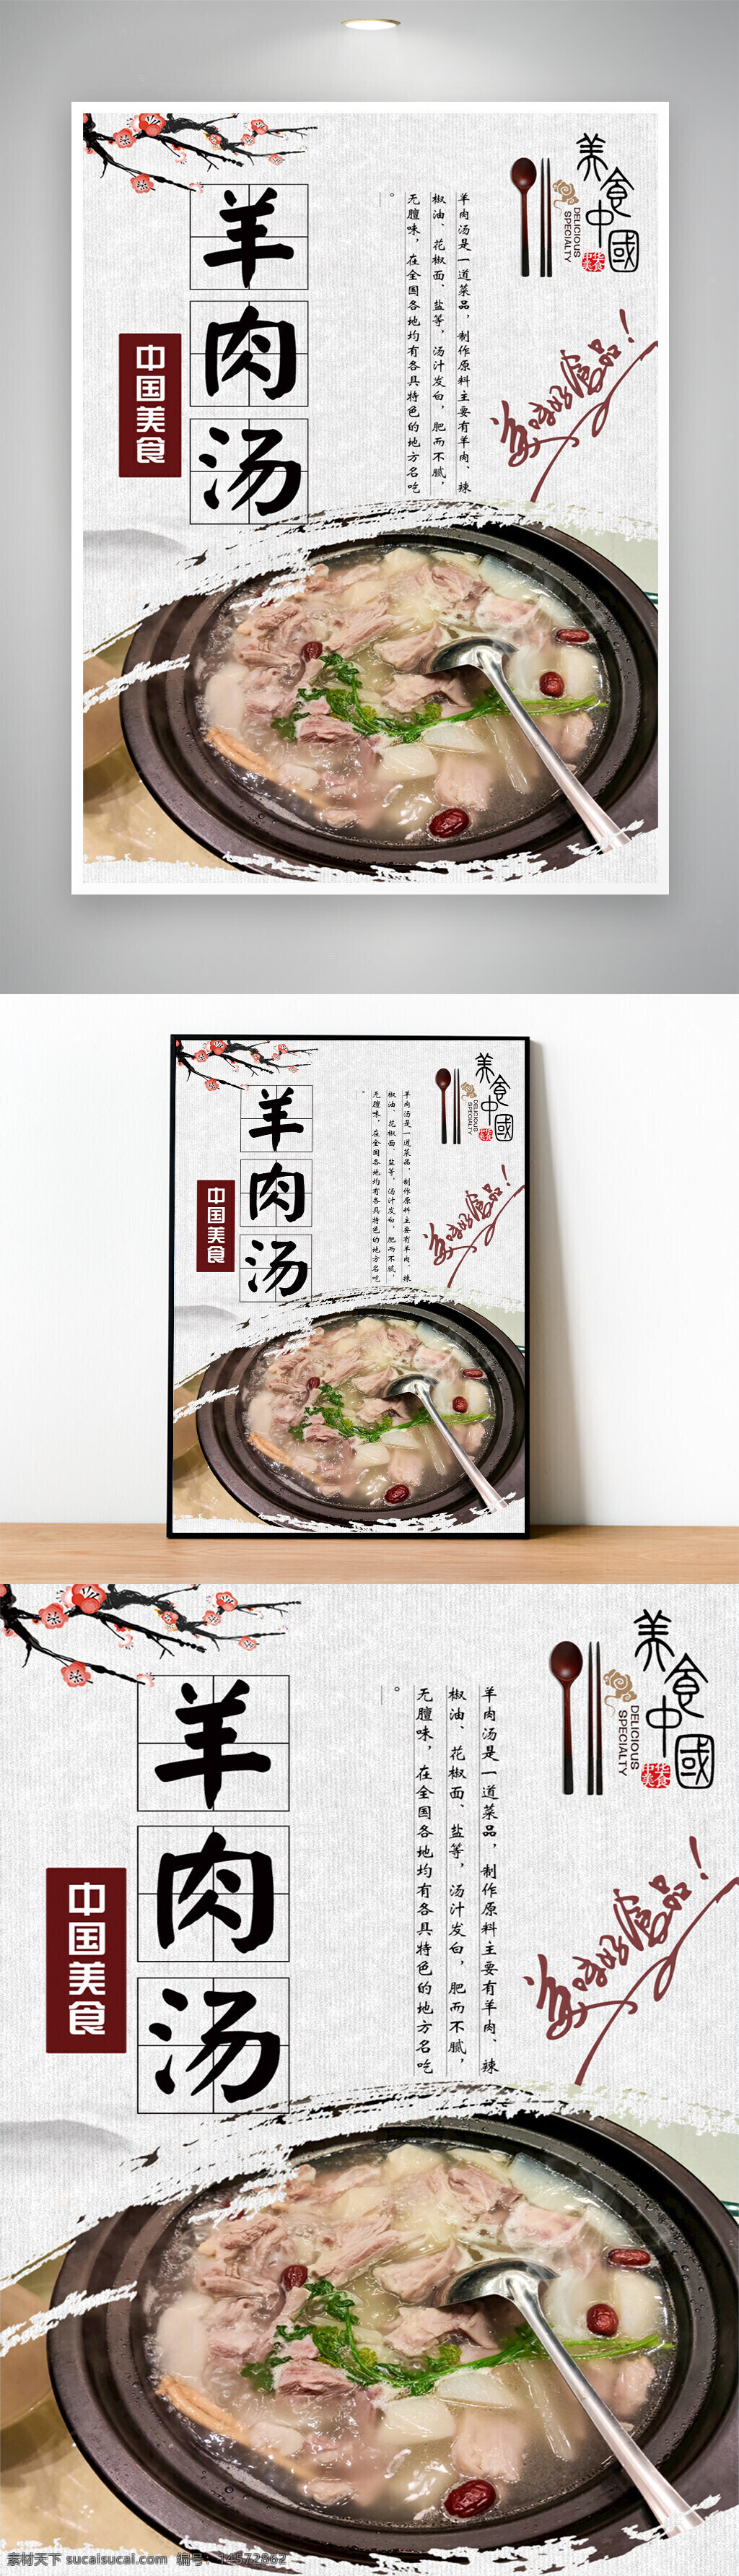 羊肉汤 羊杂汤 炖羊肉 餐饮海报 美食海报 中式美食 中式海报